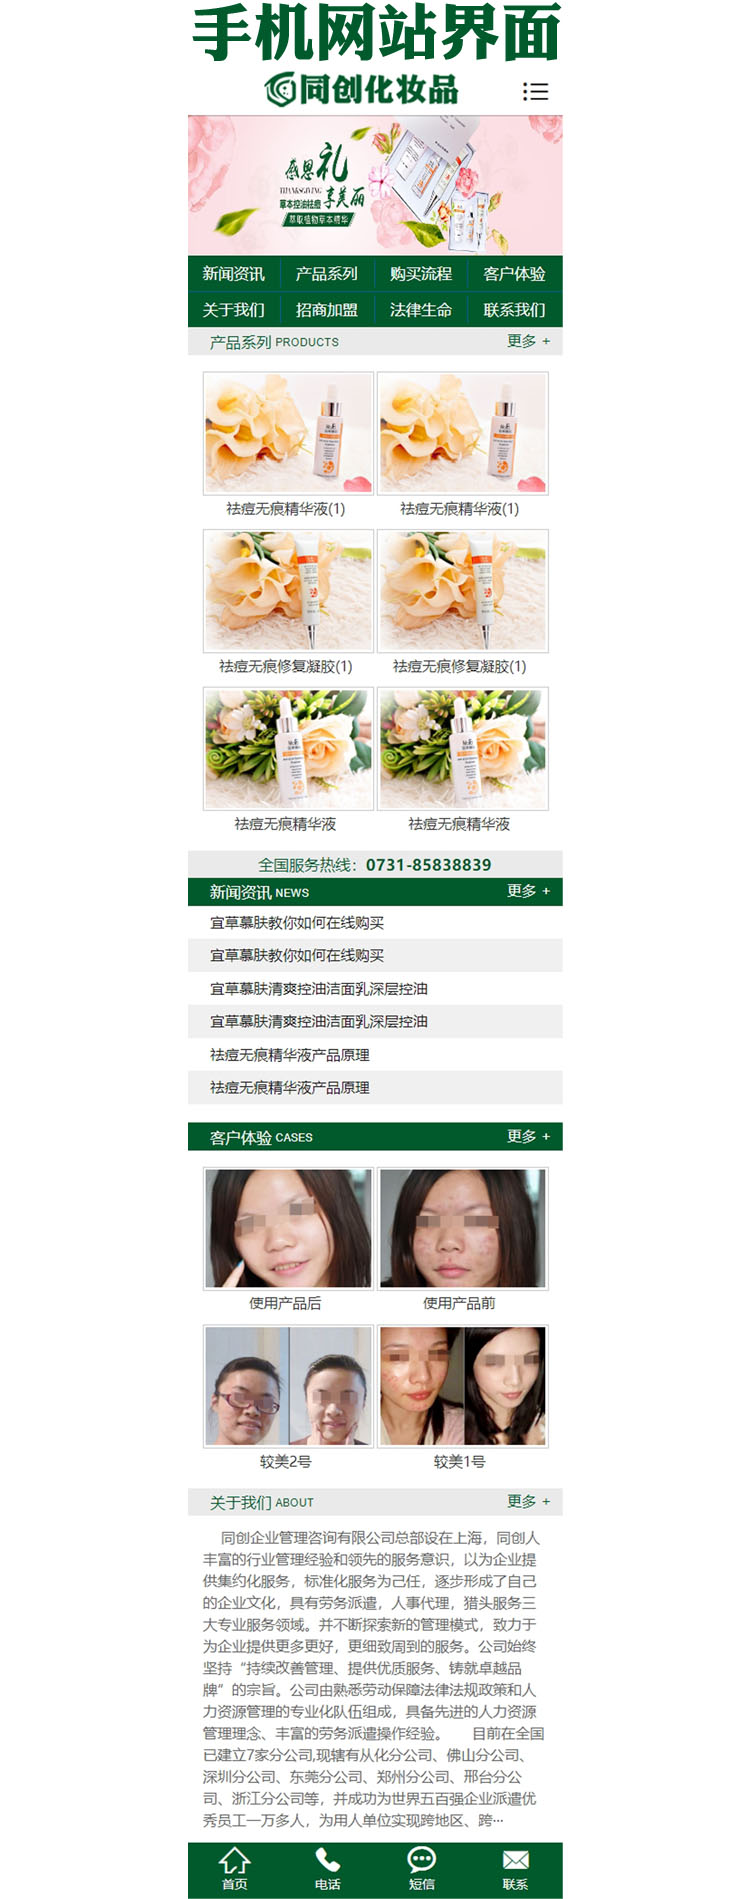 美容化妆品网站制作源码程序-PB041-3